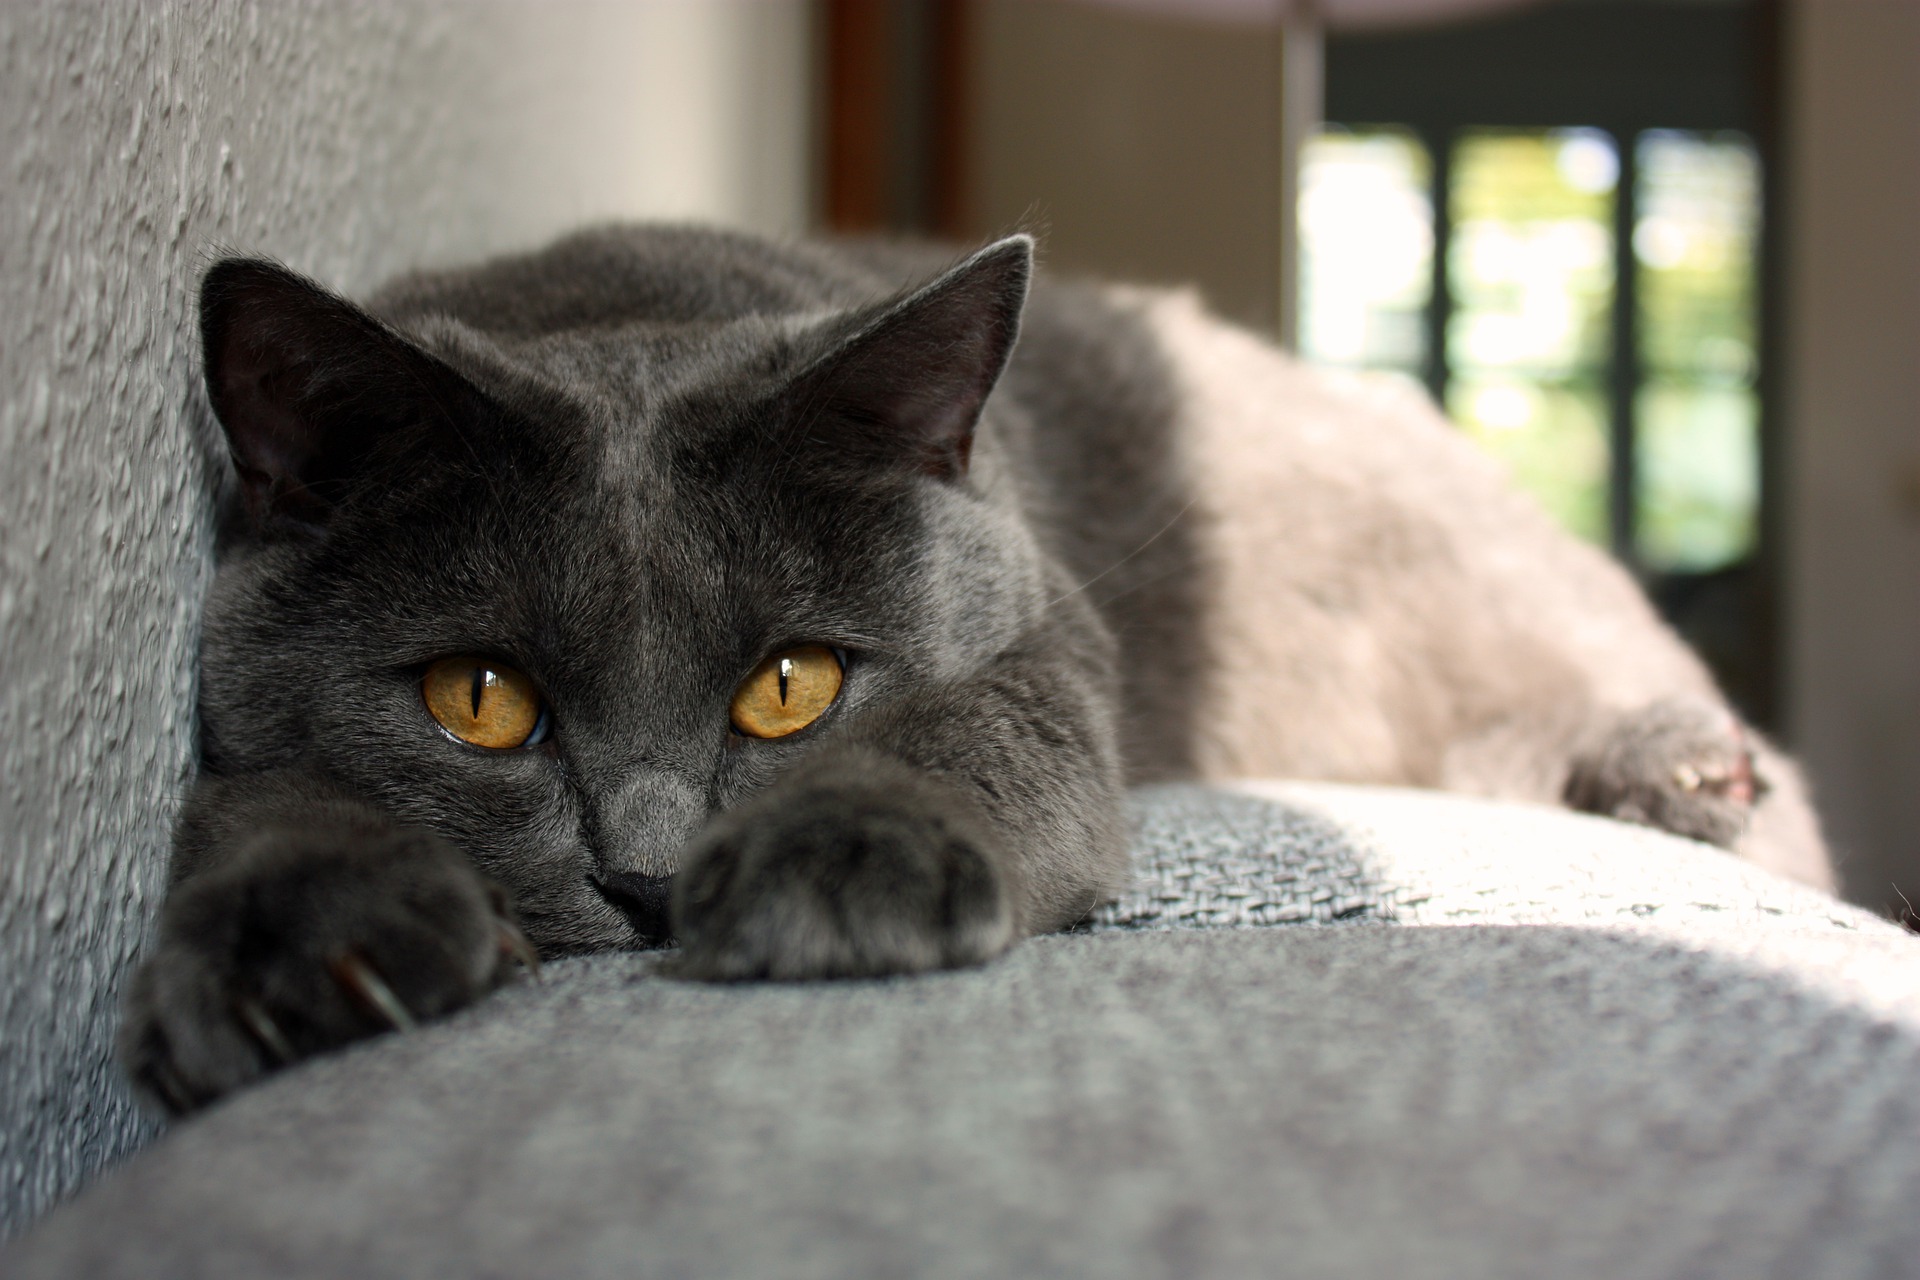 Koty kartuskie muszą mieć złote oczy, dopuszczalne są odcienie od żółtego po miedziany.